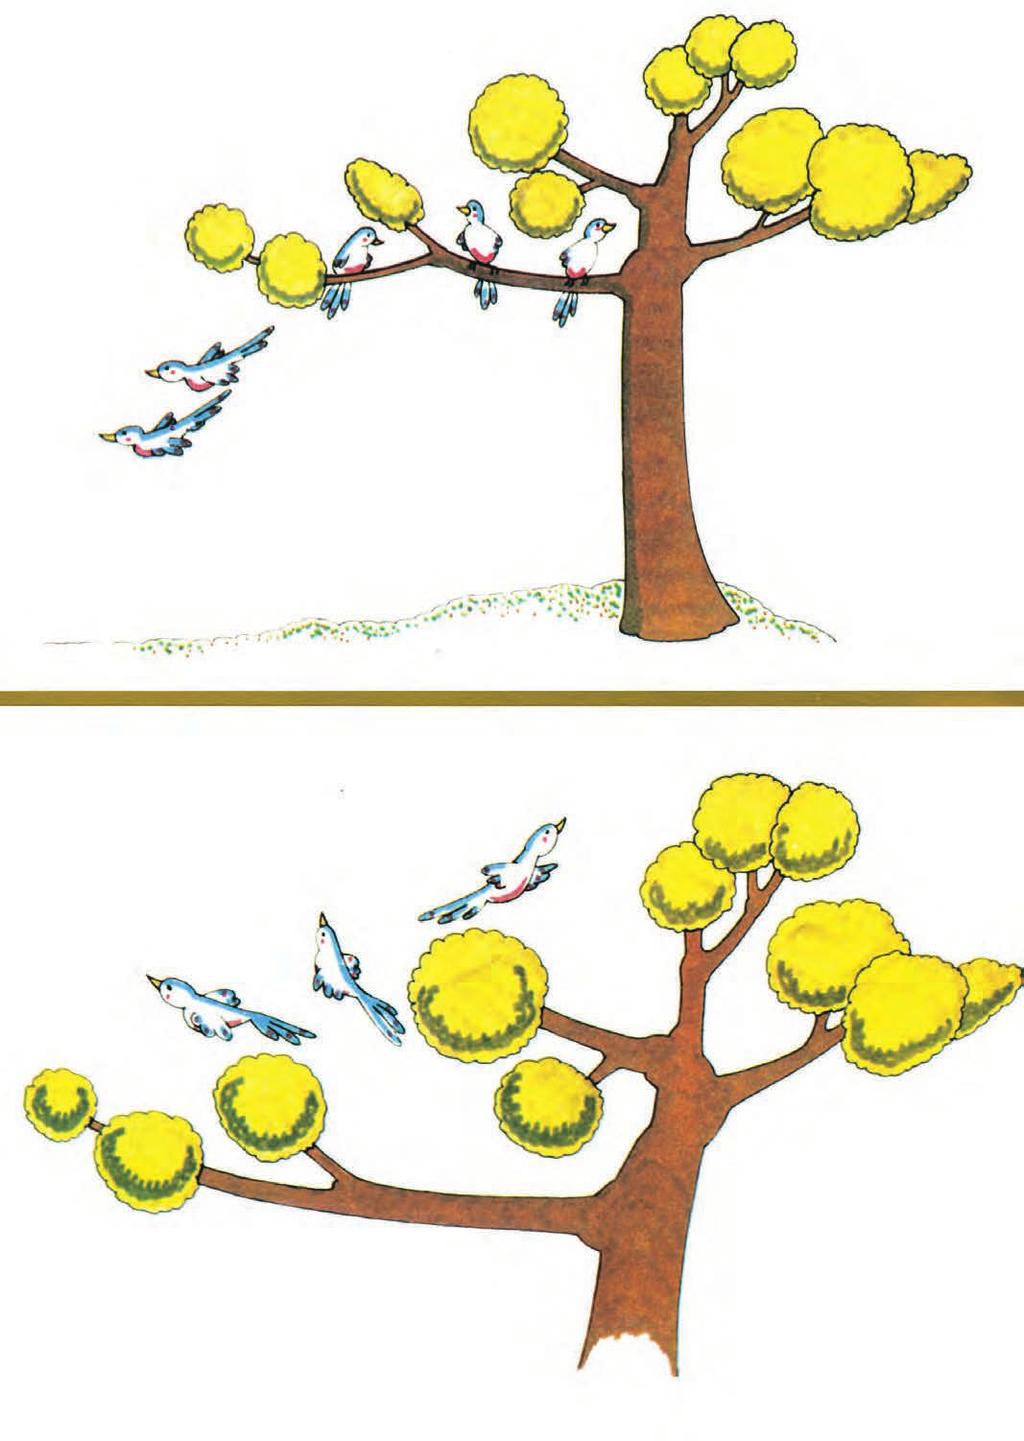 PROBLEMAS ILUSTRADOS Nesta árvore estavam 5 passarinhos, fugiram 2. Quantos ficaram?